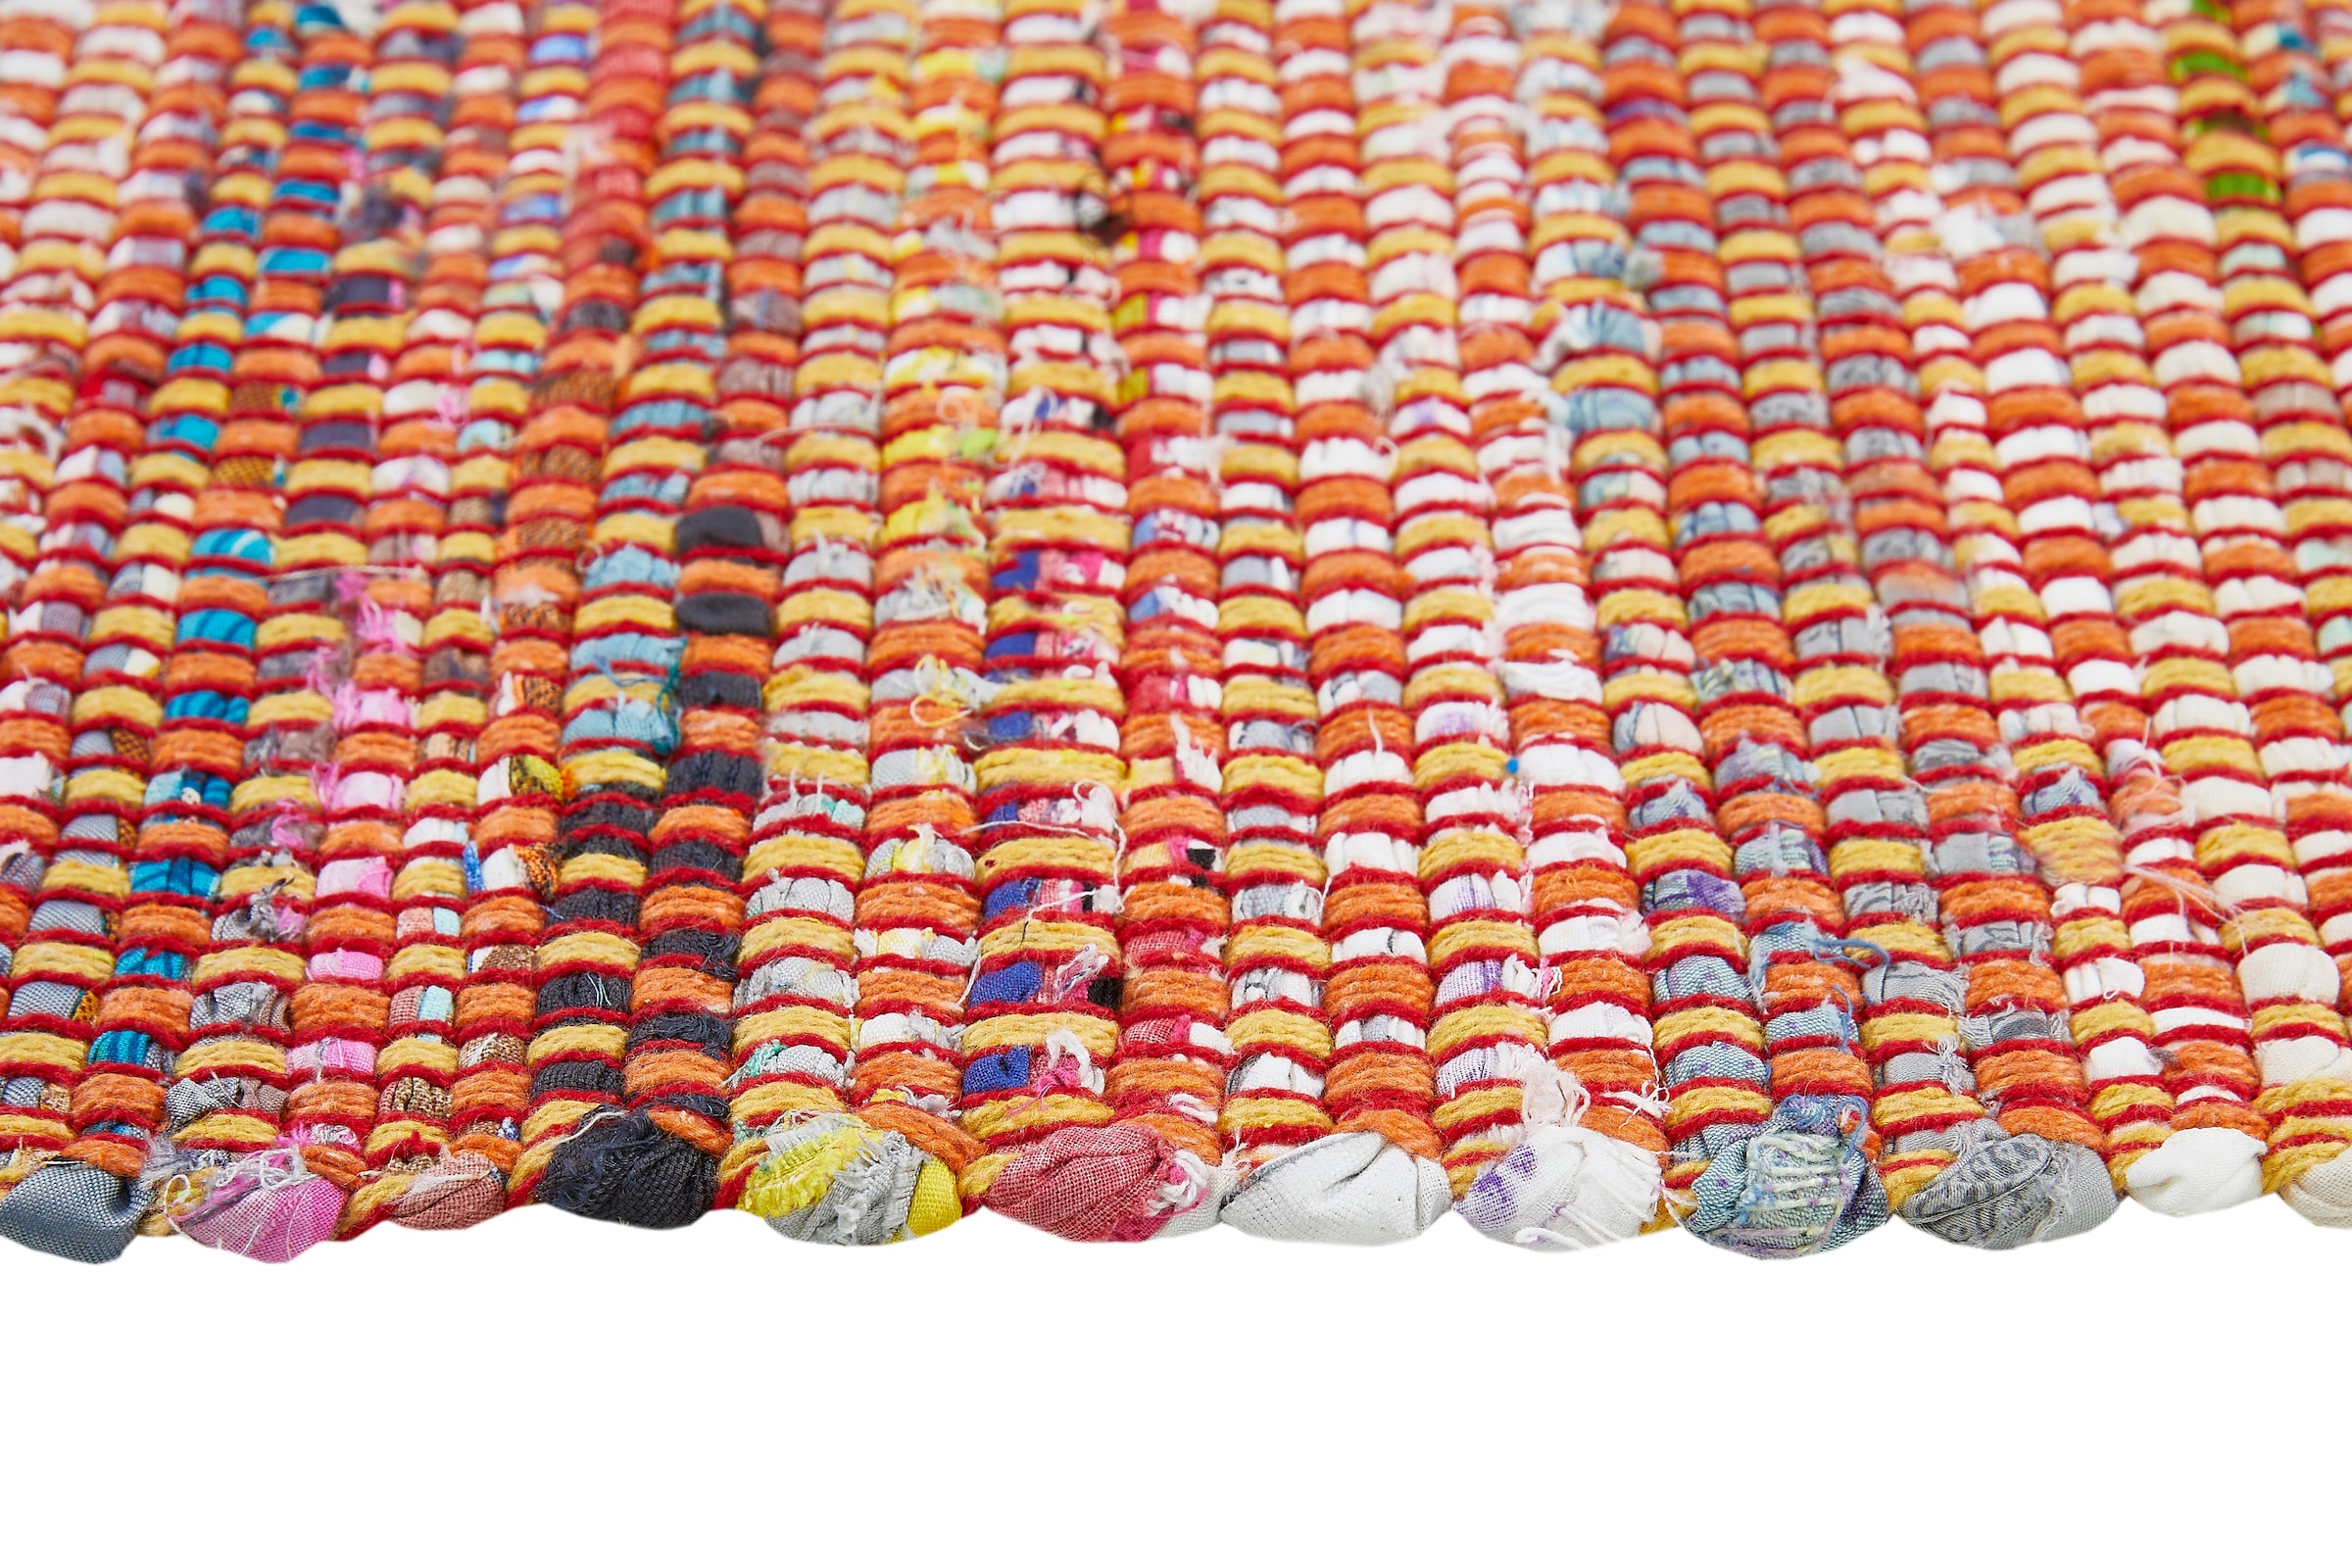 Andiamo Teppich »Frida«, rechteckig, Handweb Teppich, Fleckerl, reine Baumwolle, handgewebt, mit Fransen